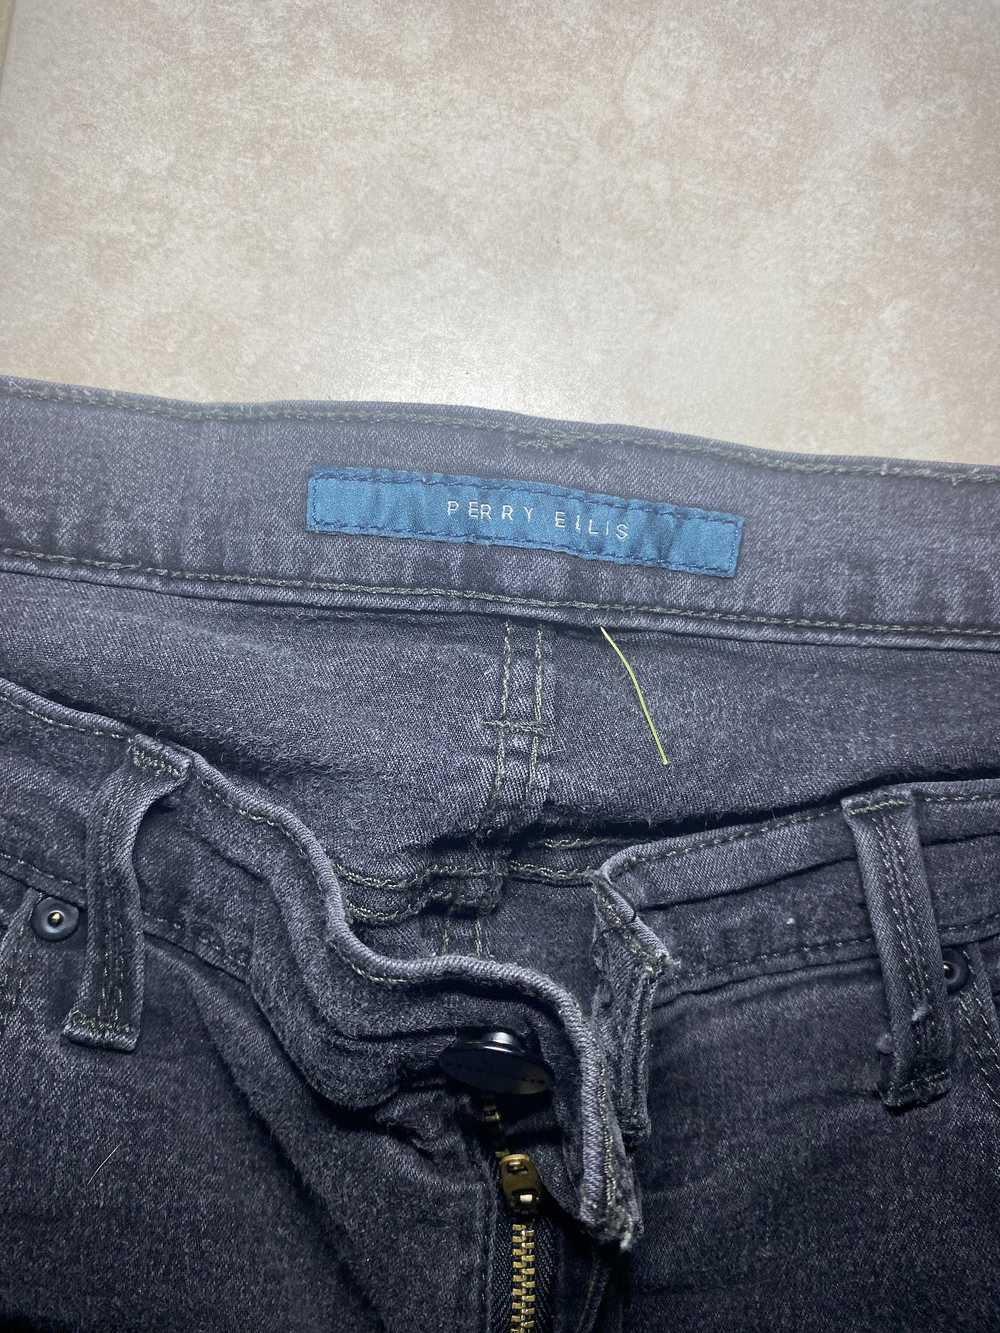 Perry Ellis Perry Ellis Grey Jeans - image 4